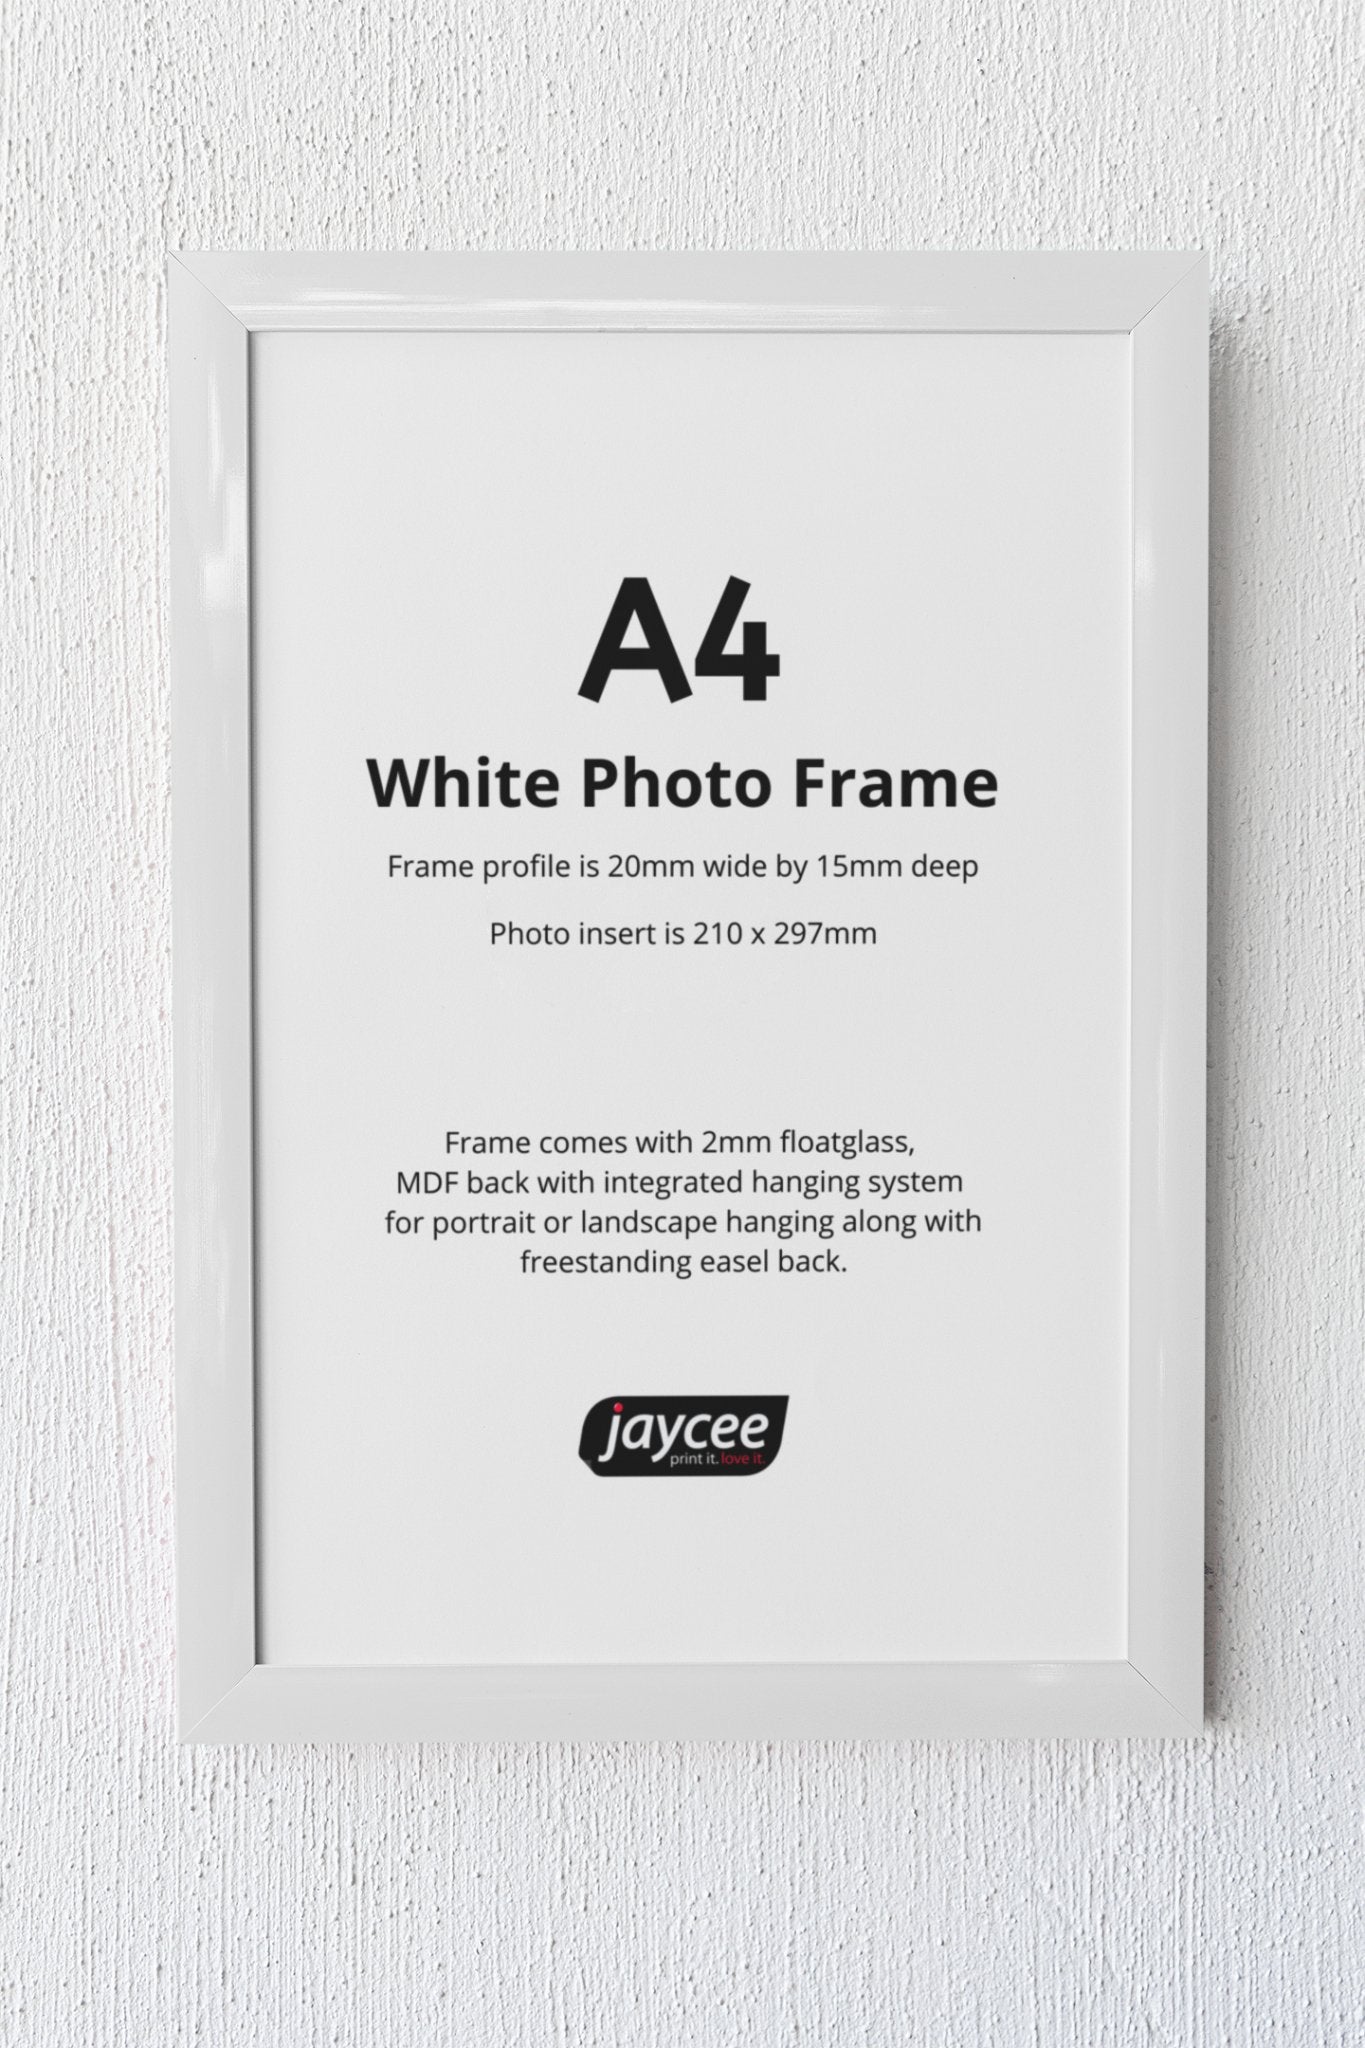 A4 White Photo Frame - Jaycee